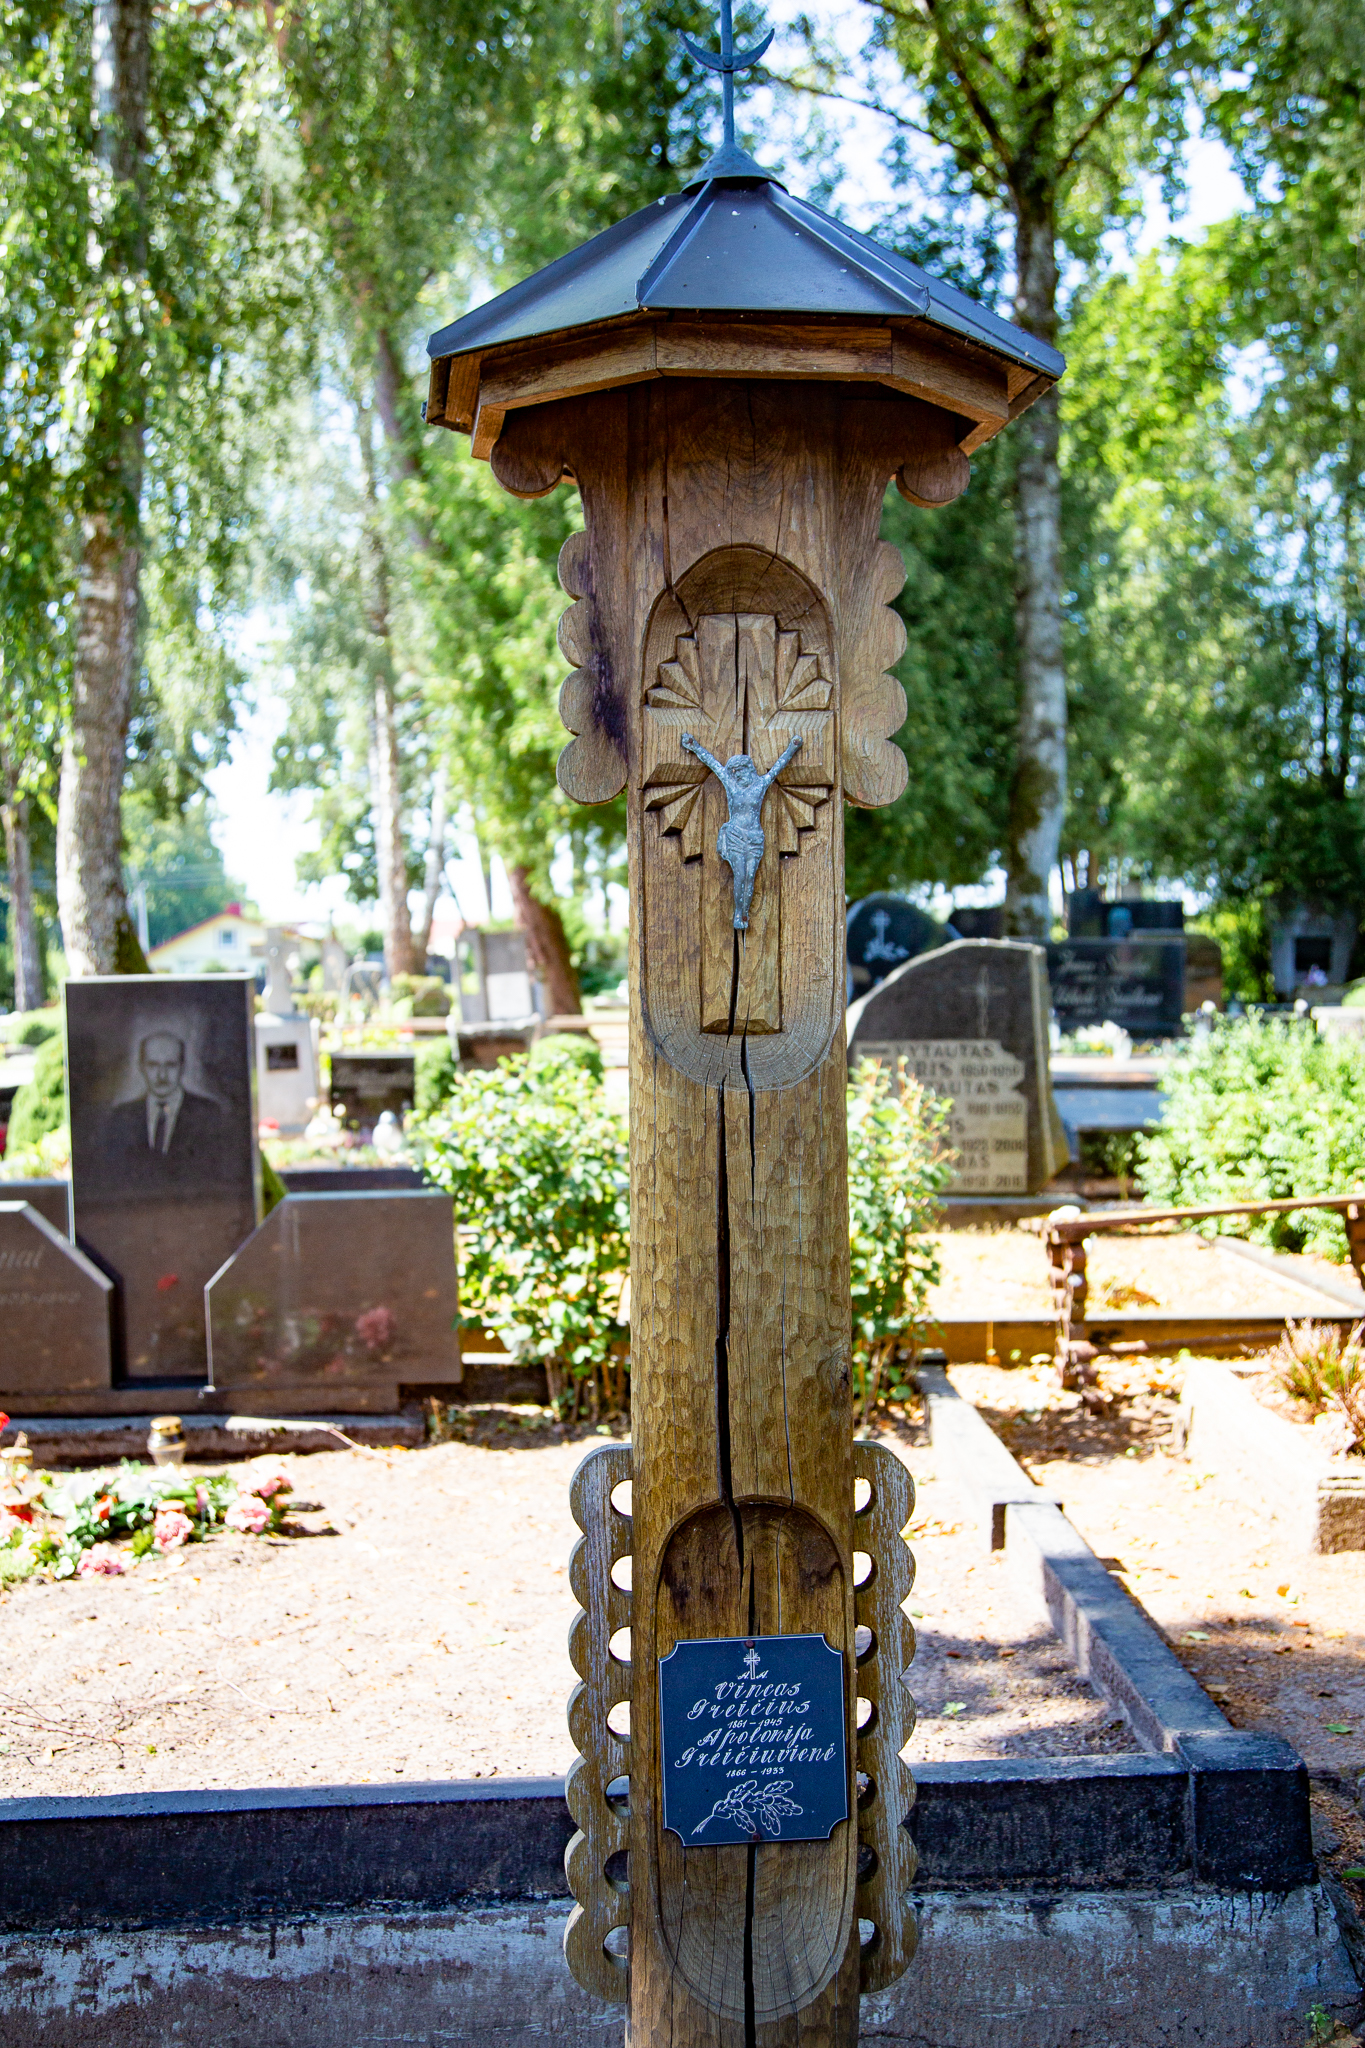 Atliktas darbas – nufotografuoti seni kryžiai, antkapiniai paminklai senosiose Jurbarko kapinėse